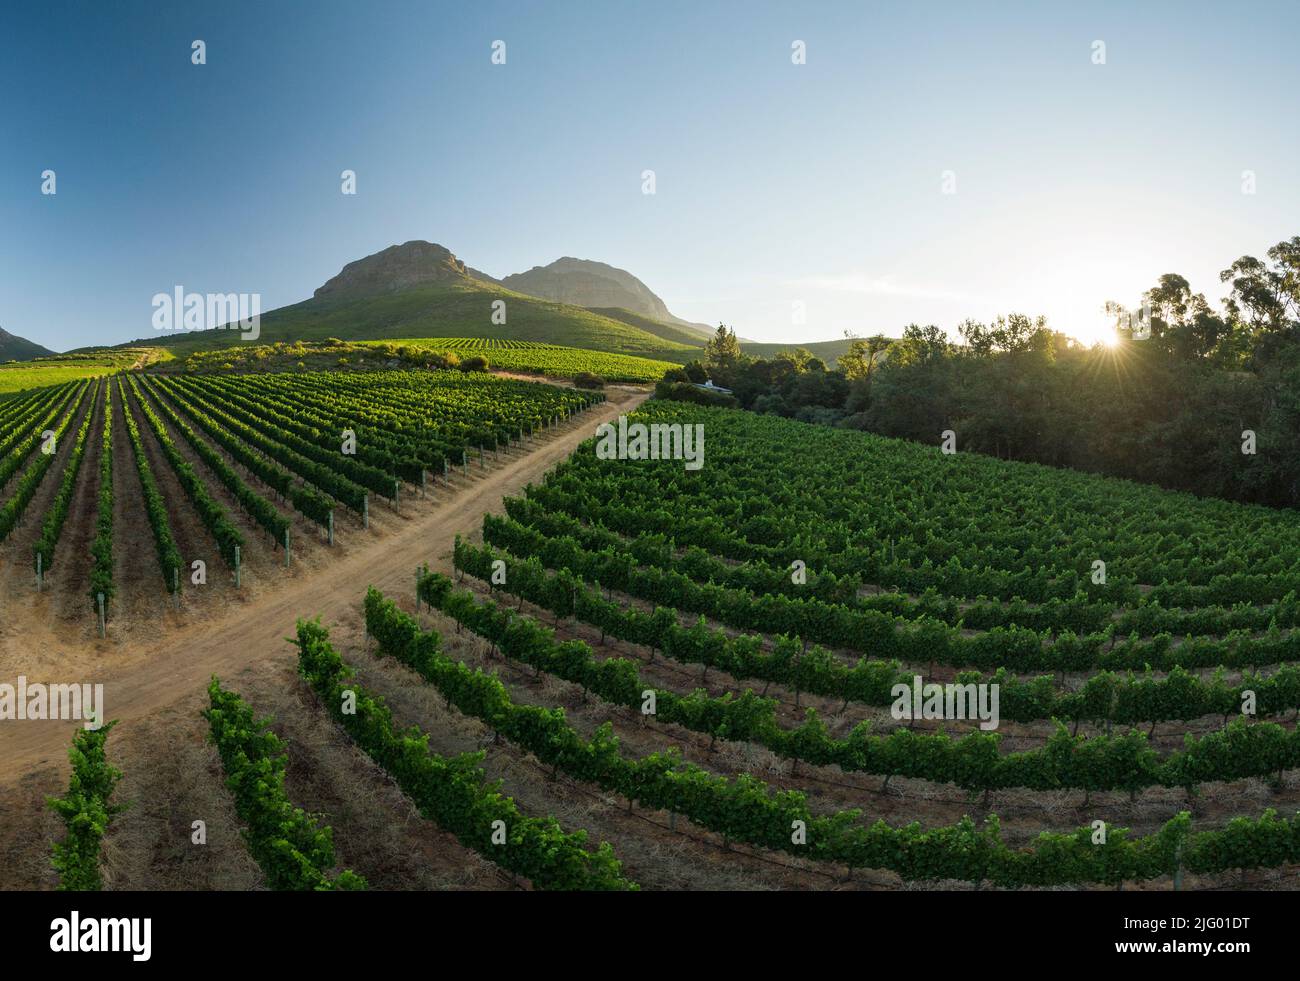 Vue aérienne des vignobles de vin près de Stellenbosch, Cap occidental, Afrique du Sud, Afrique Banque D'Images